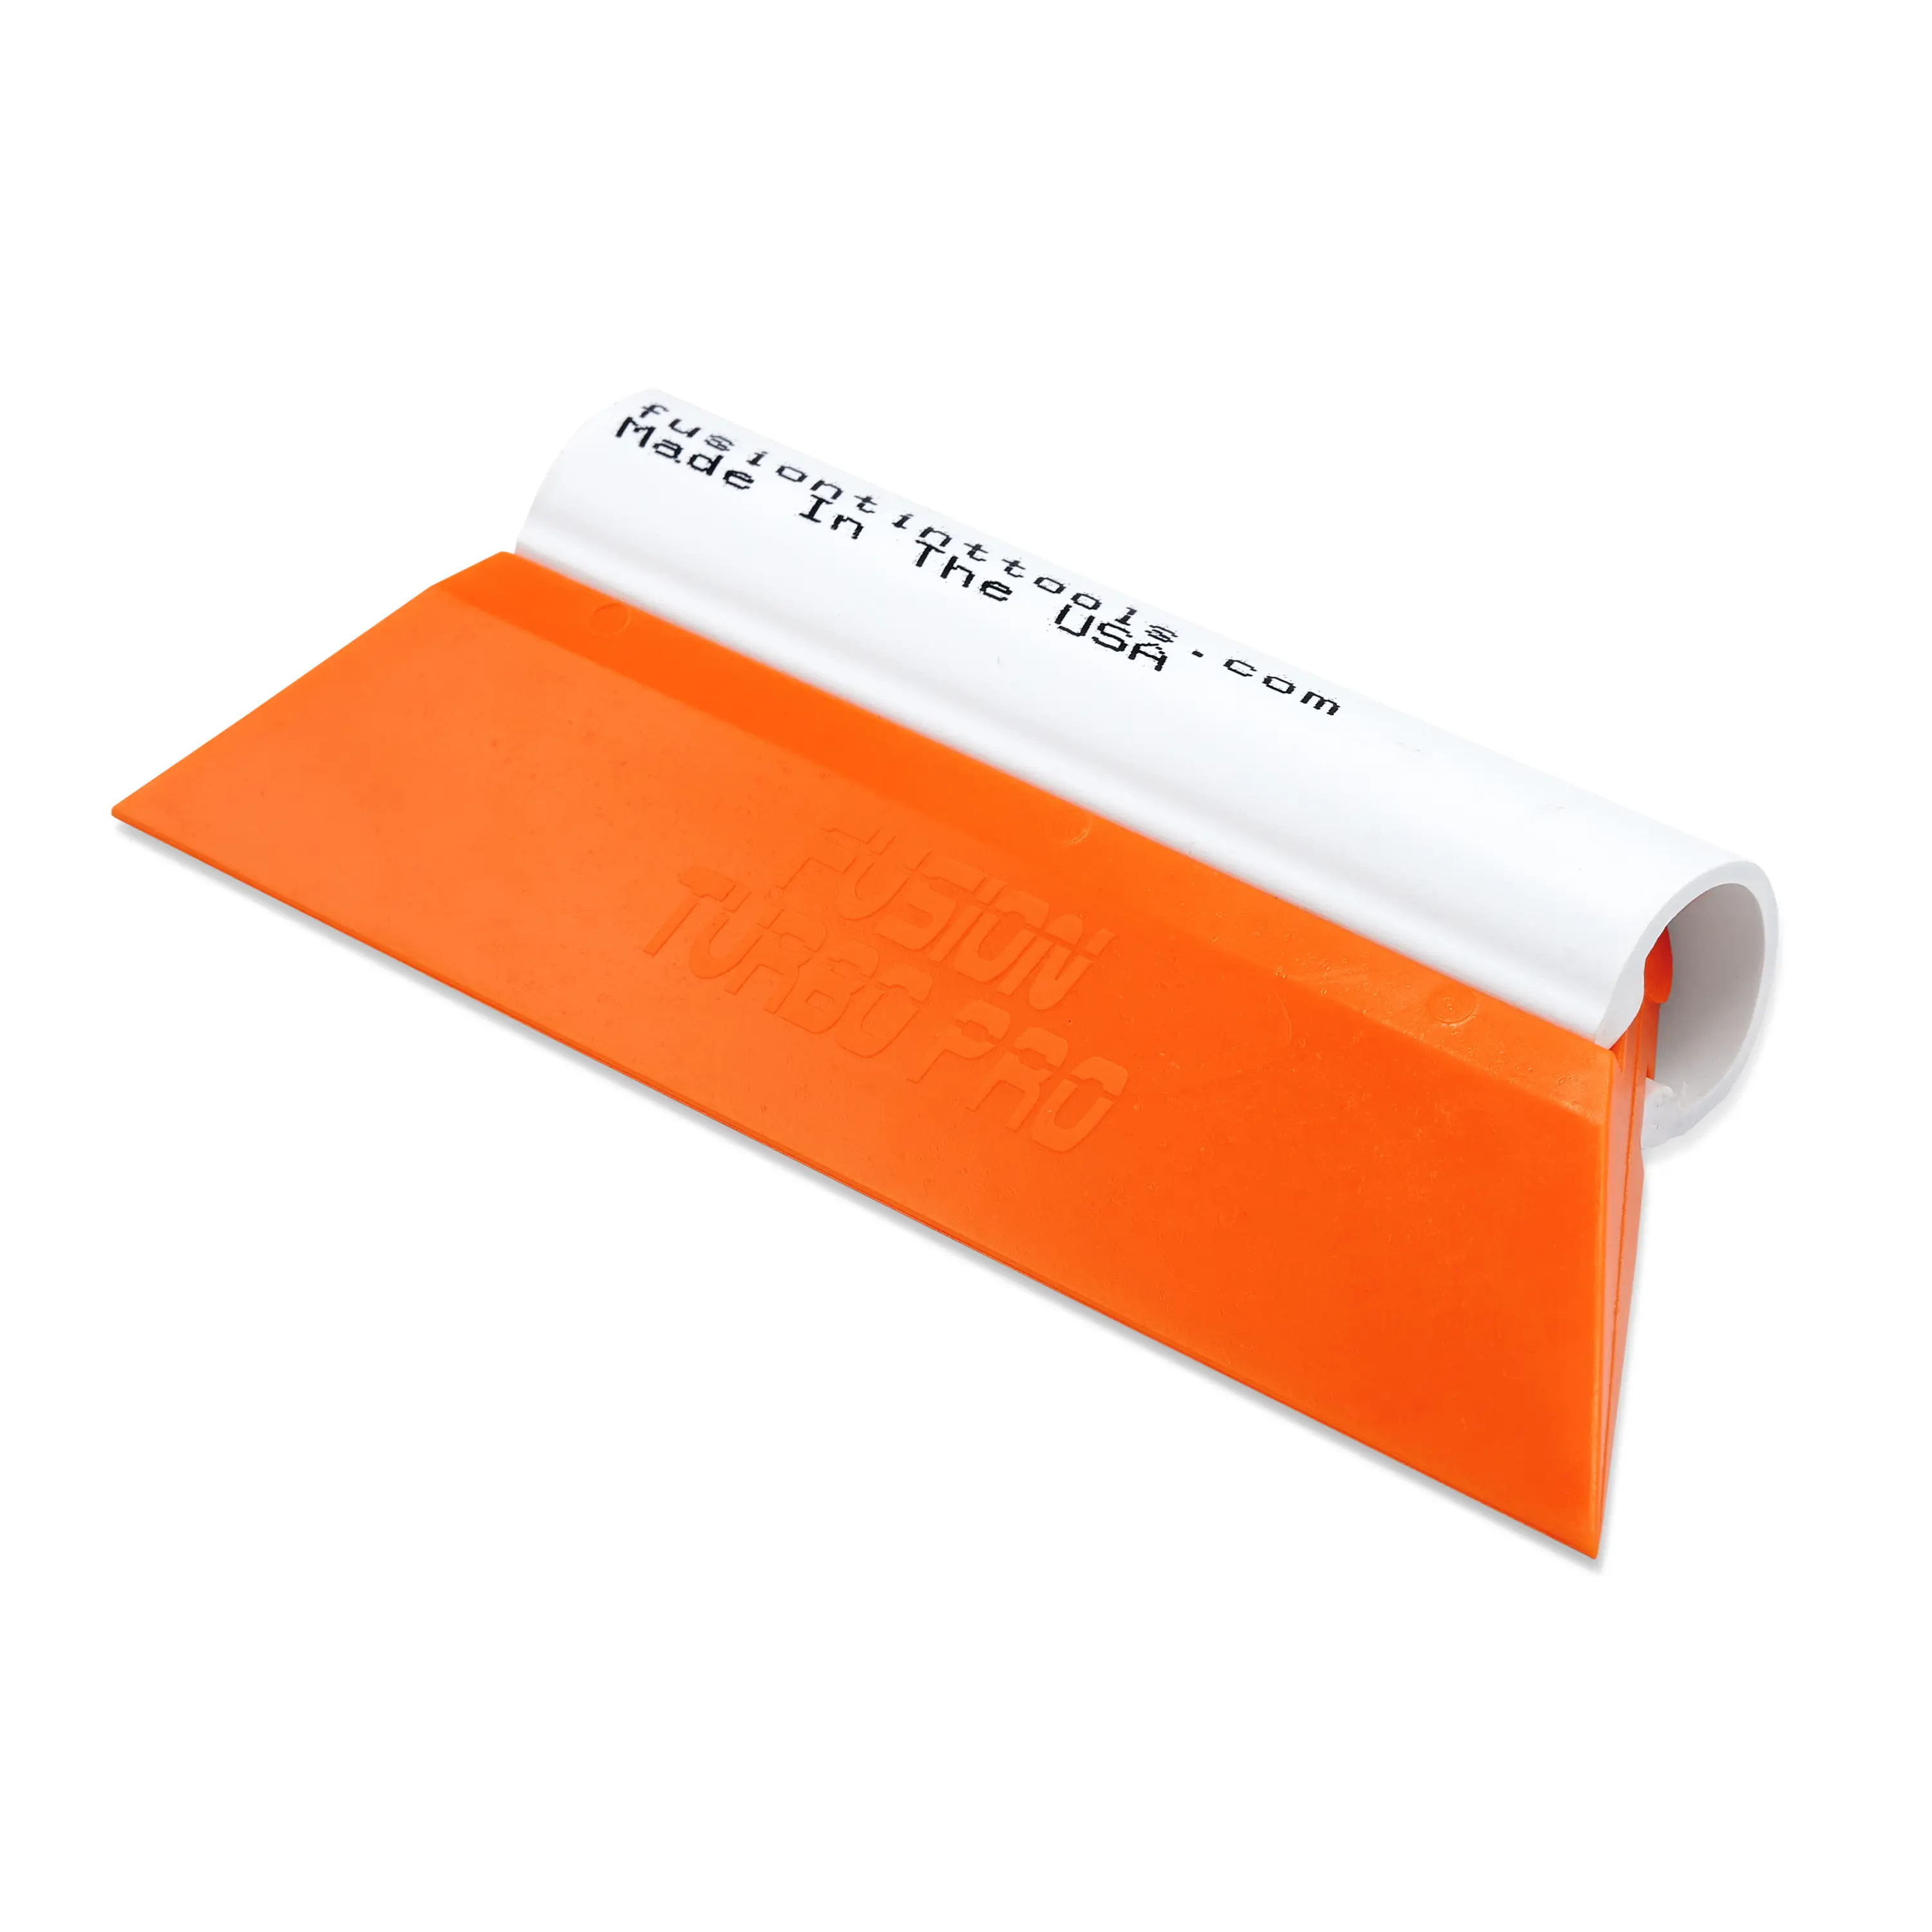 Выгонка FUSION TURBO PRO оранжевая с пластиковой ручкой, 14 см.